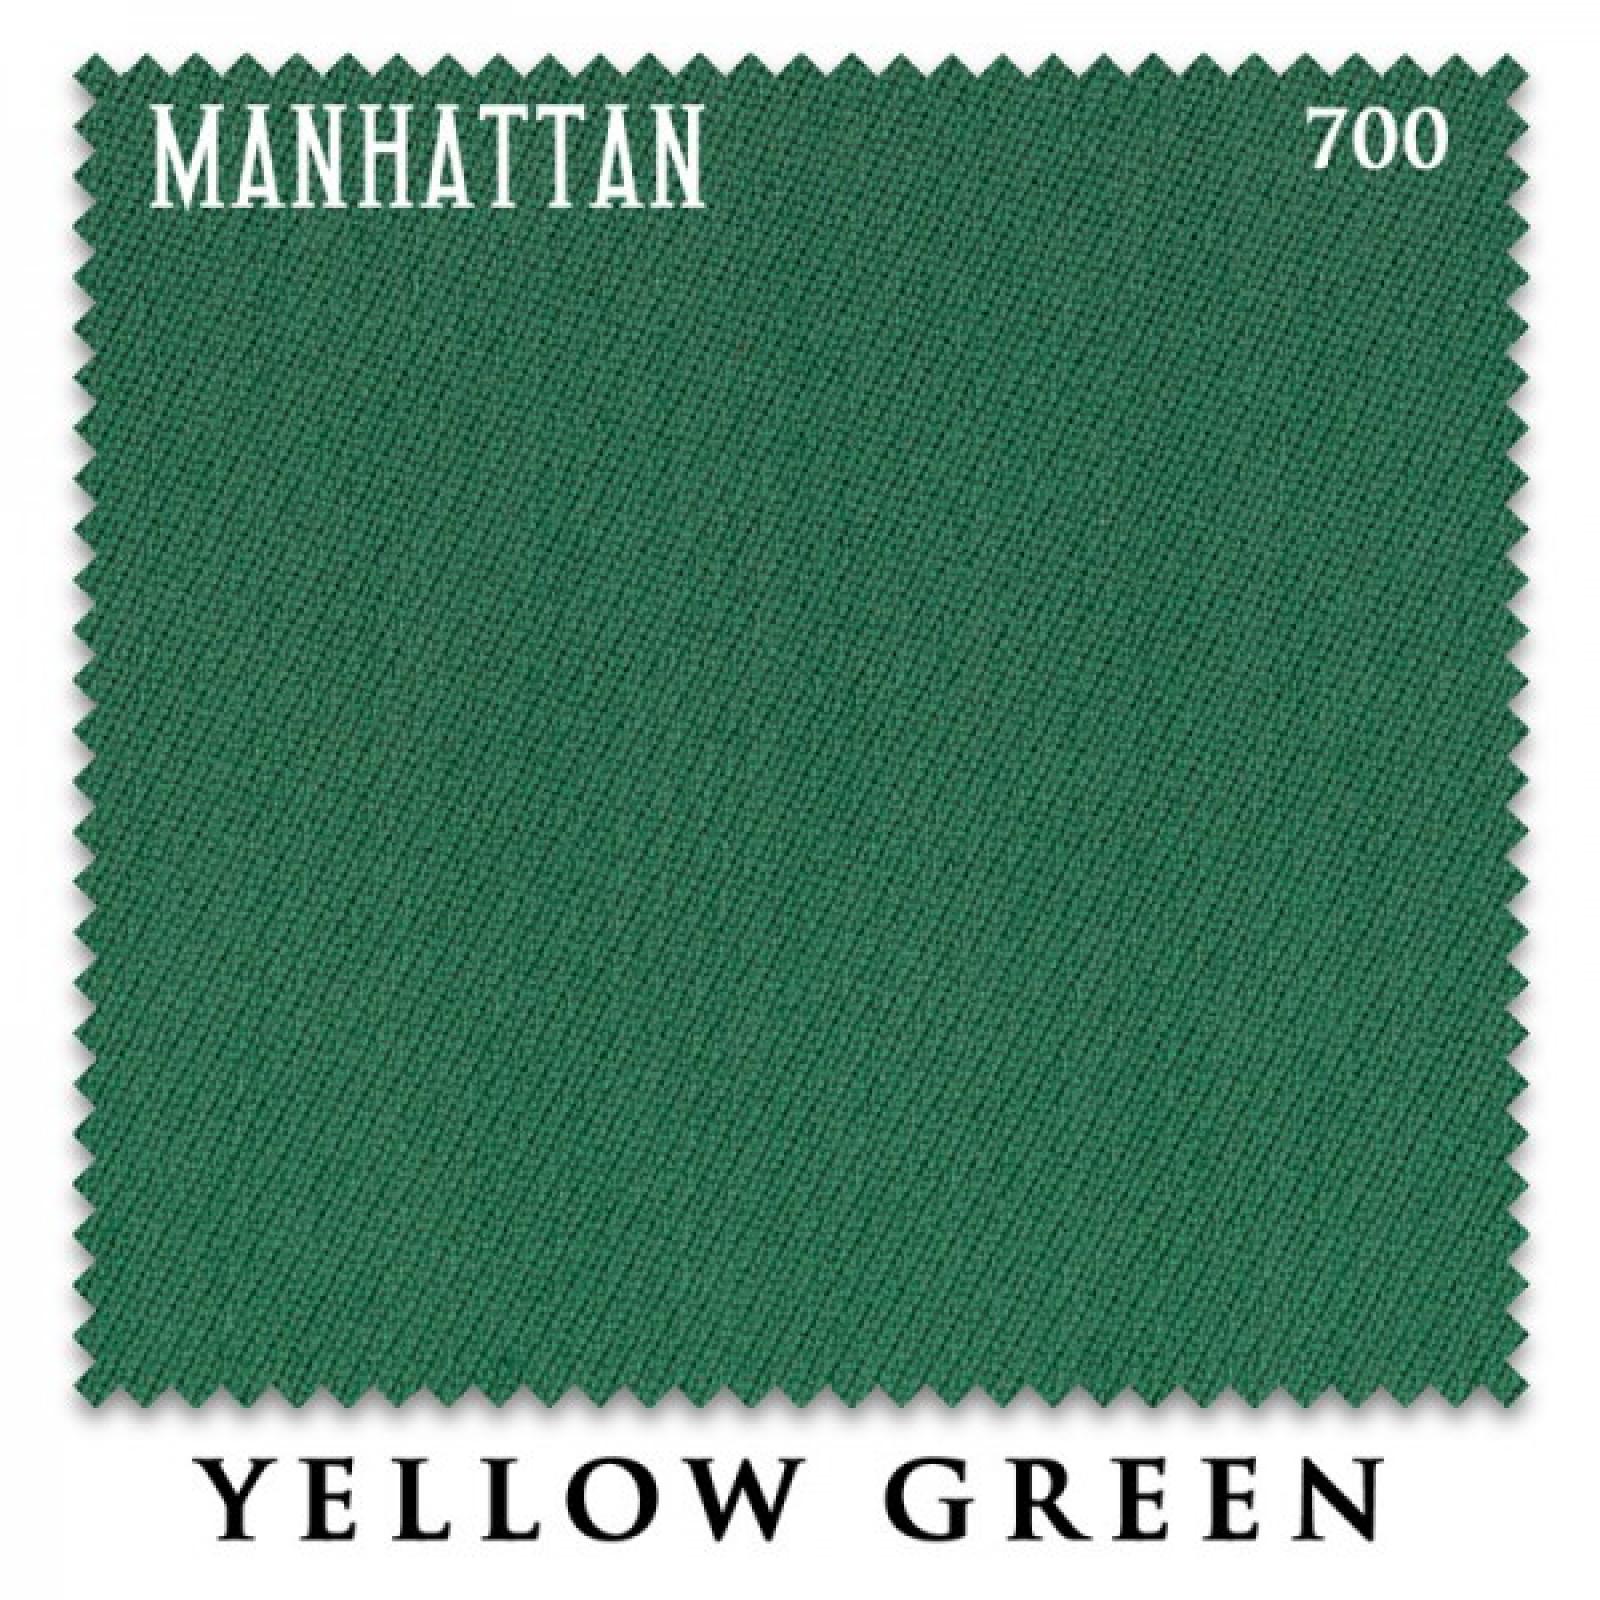 Слово сукно. Сукно Eurosprint 70 Rus Pro 198см Yellow Green. Сукно Manhattan 700. Yellow Green сукно Simonis. Бильярдное сукно Euro Pro 50 Yellow Green.